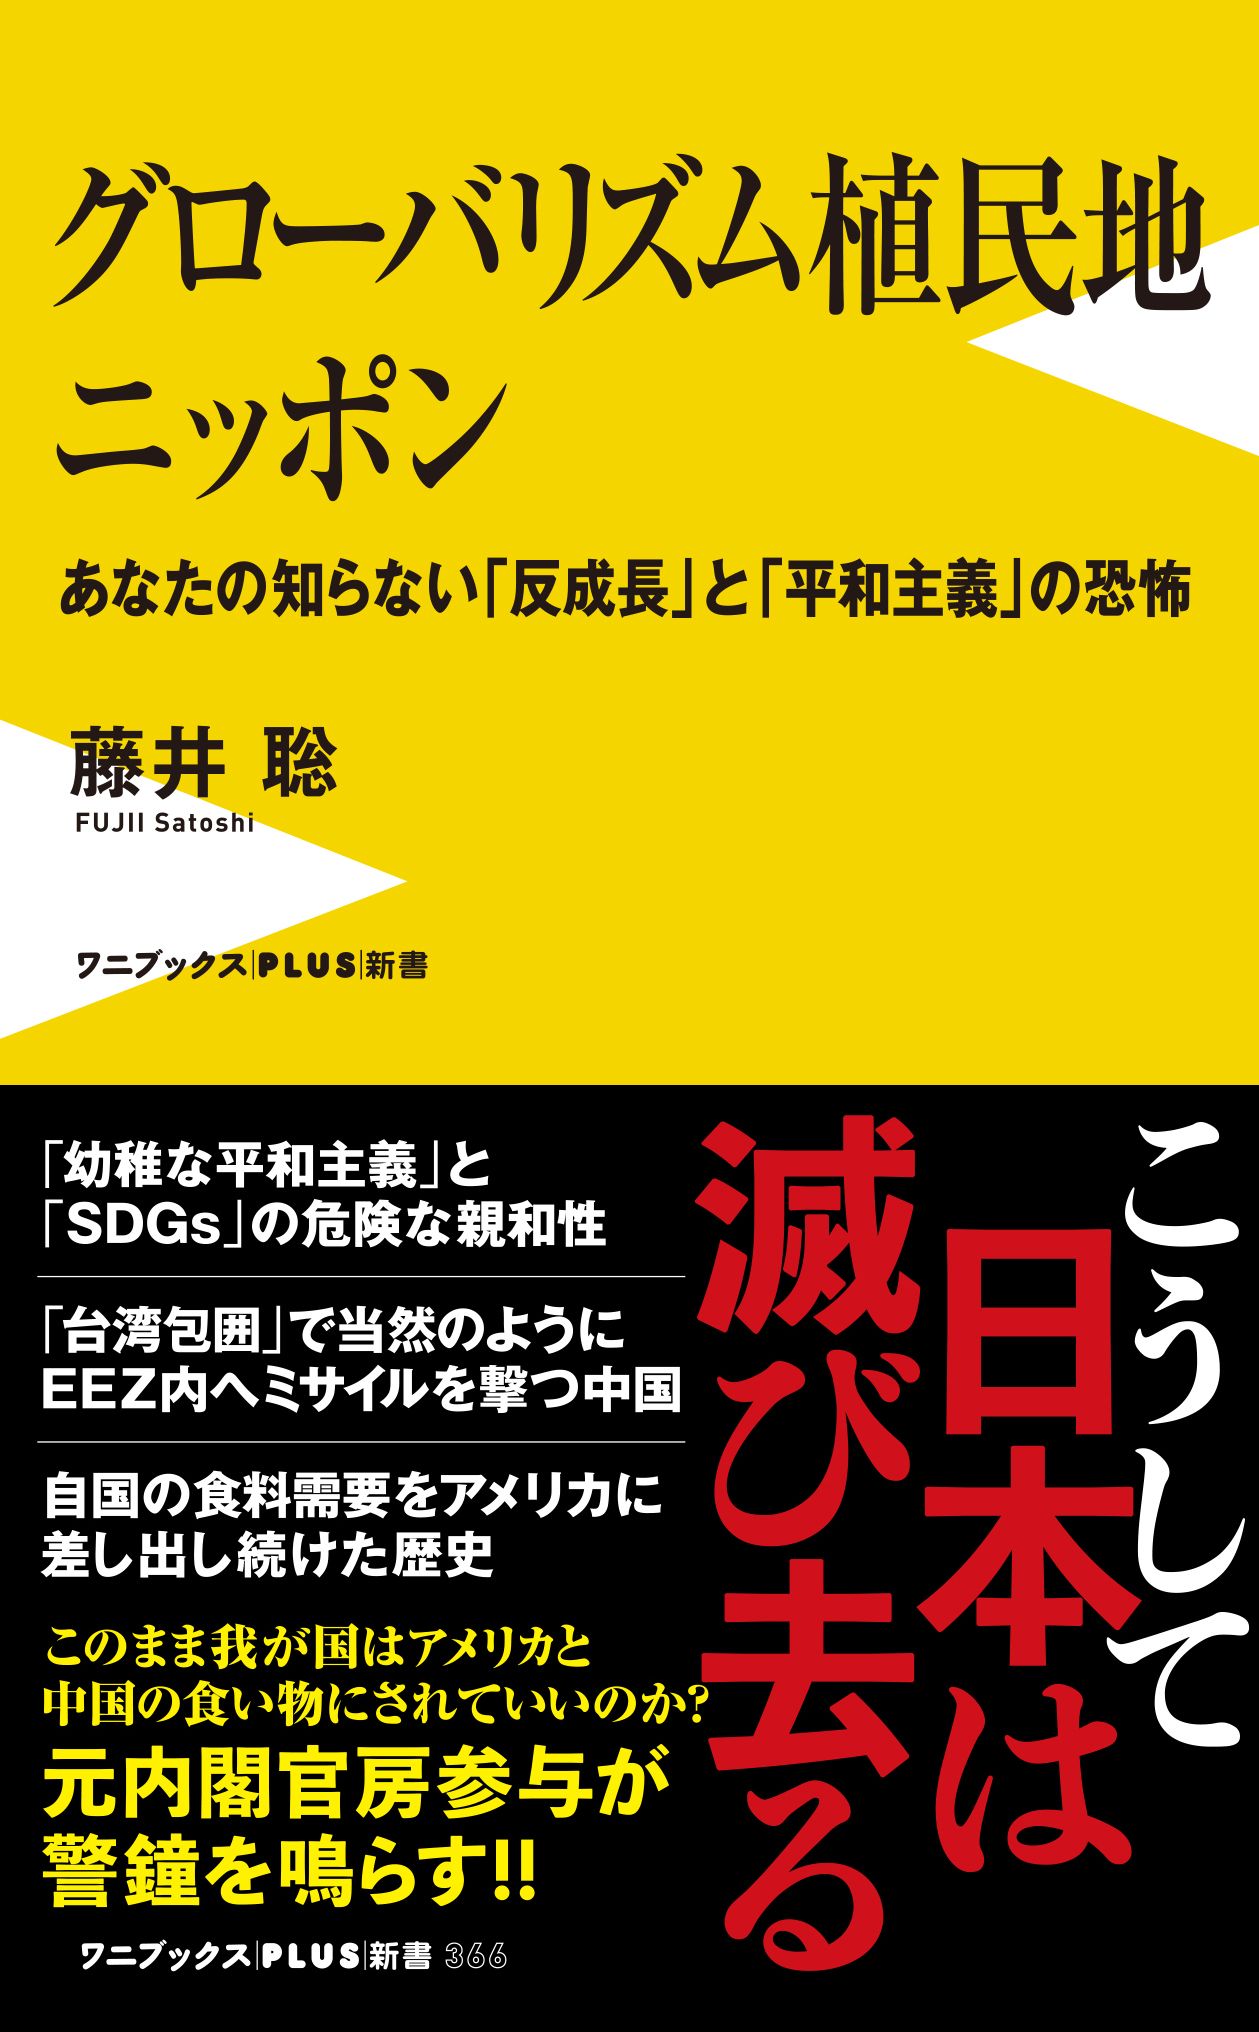 グローバリズム植民地 ニッポン - あなたの知らない「反成長」と「平和主義」の恐怖の商品画像